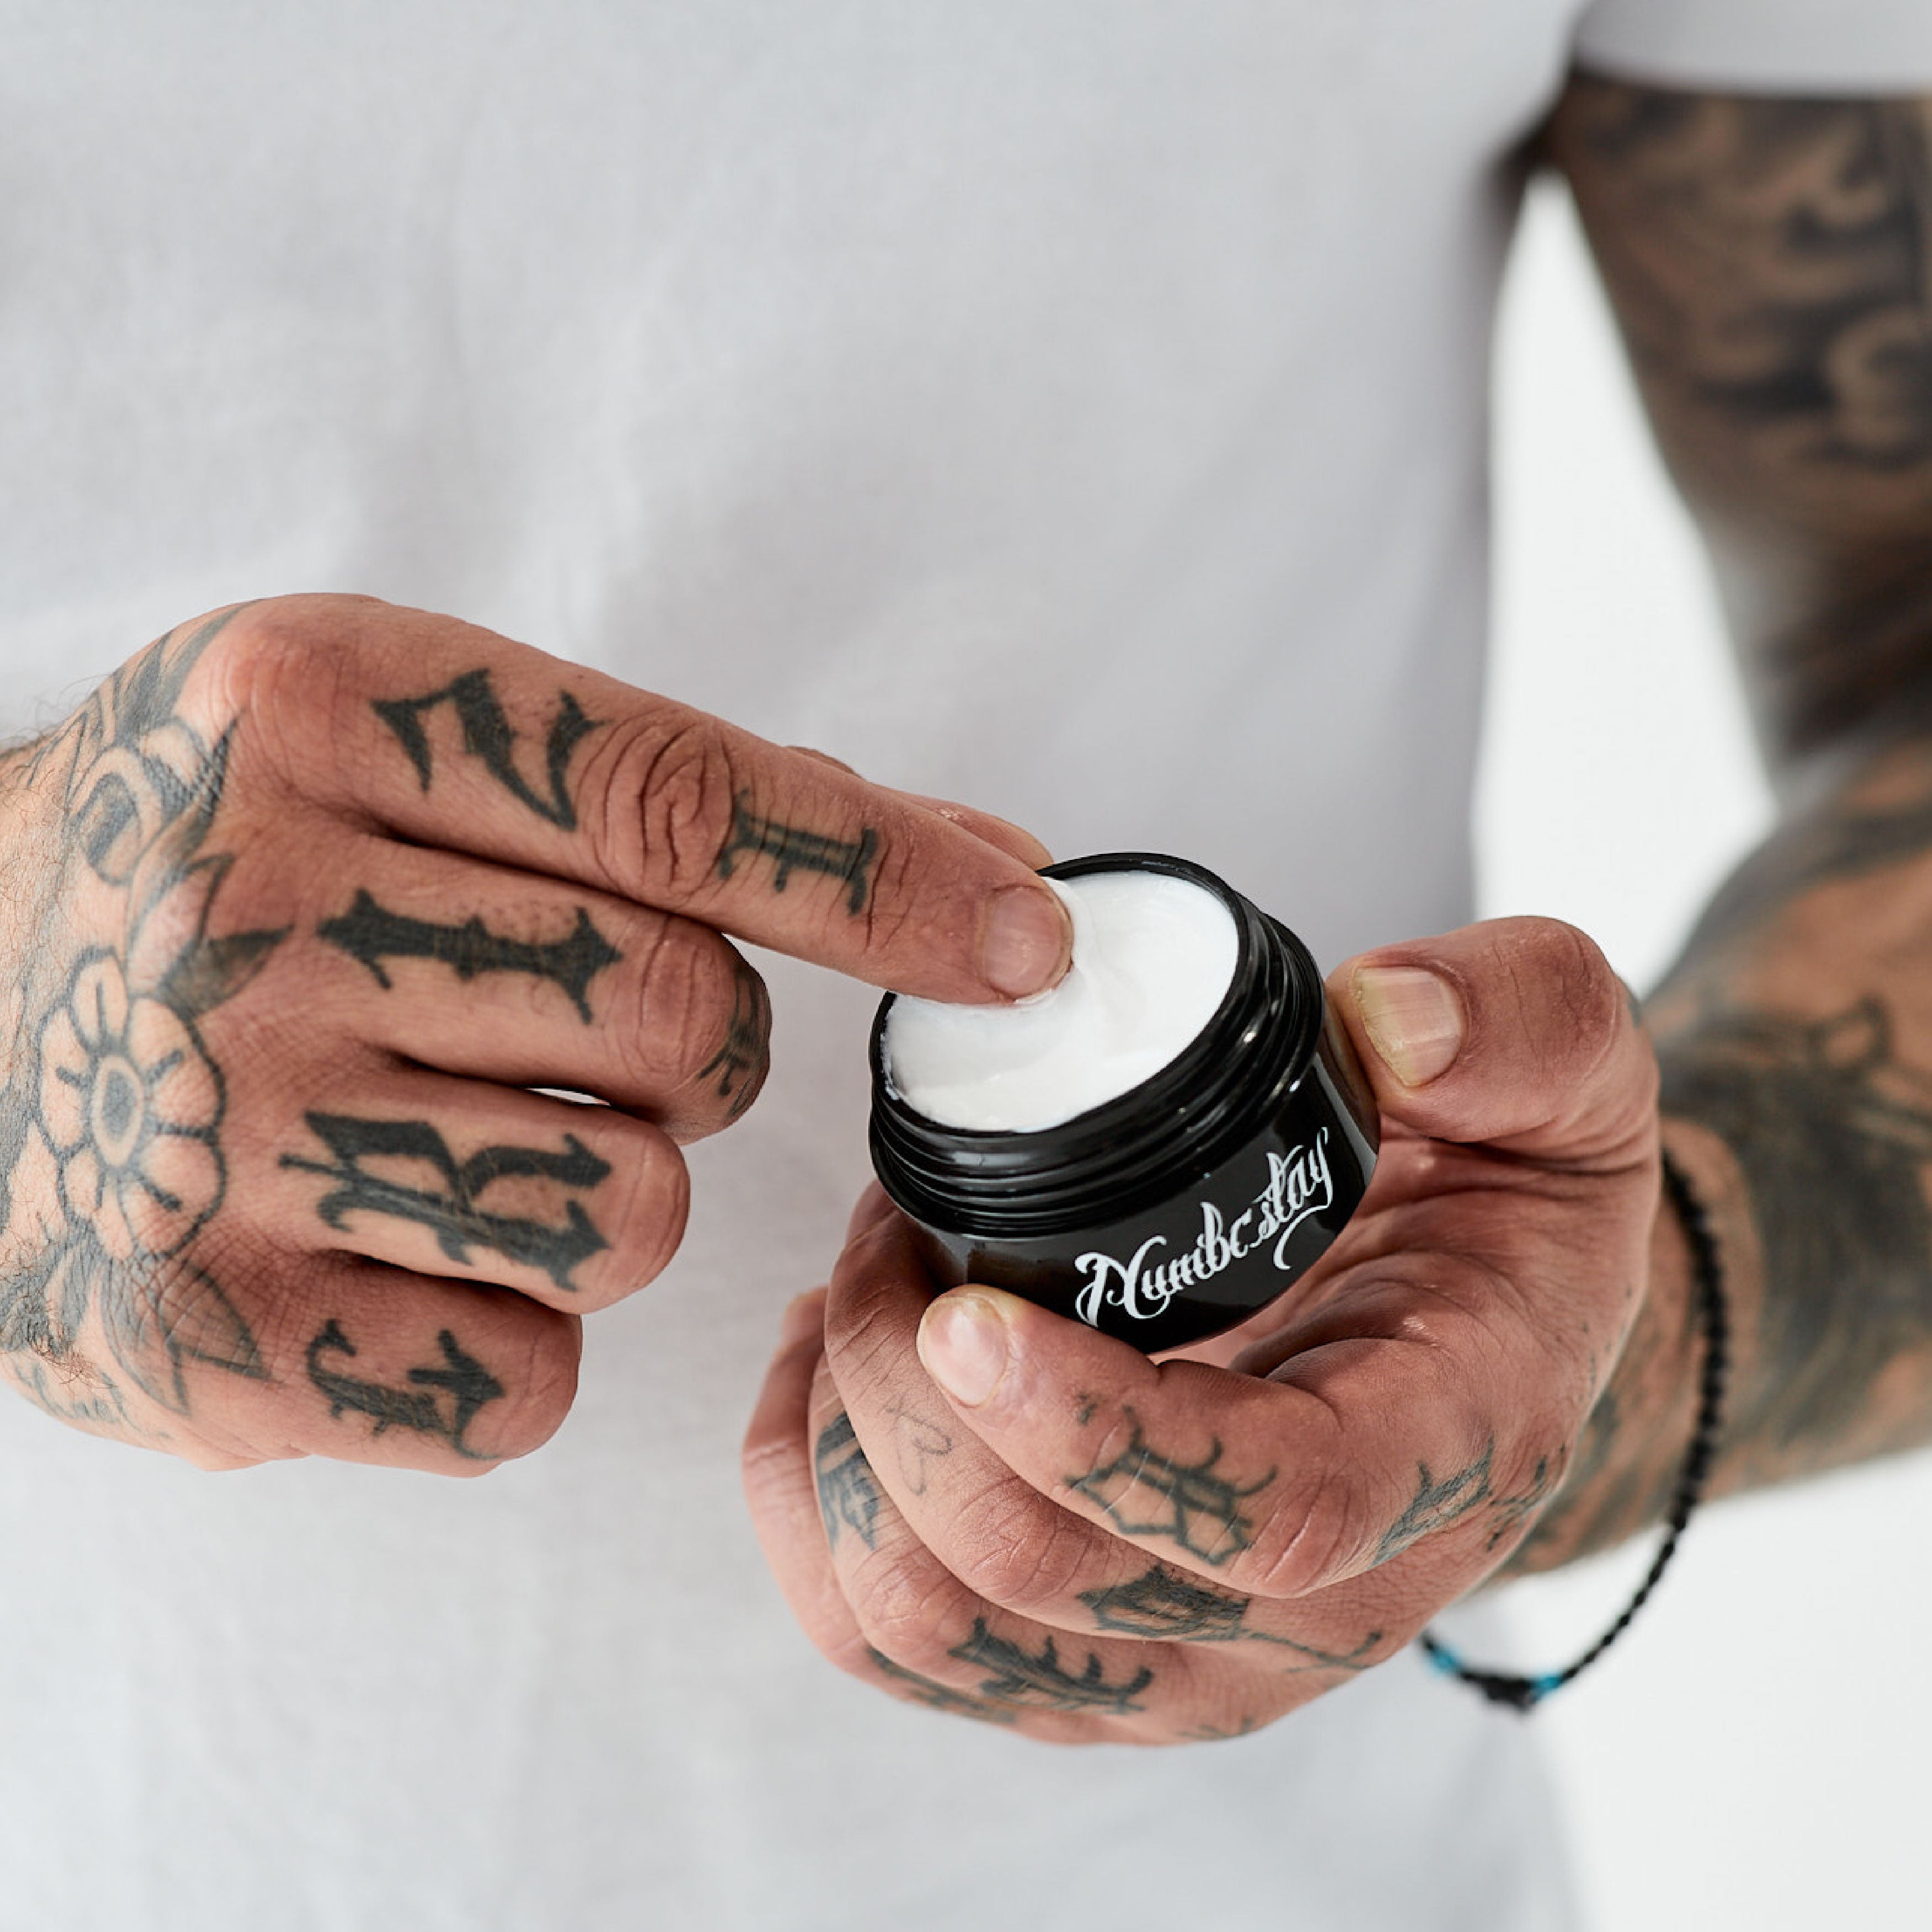 The Tattoo Numbing Cream Australia Loves Best